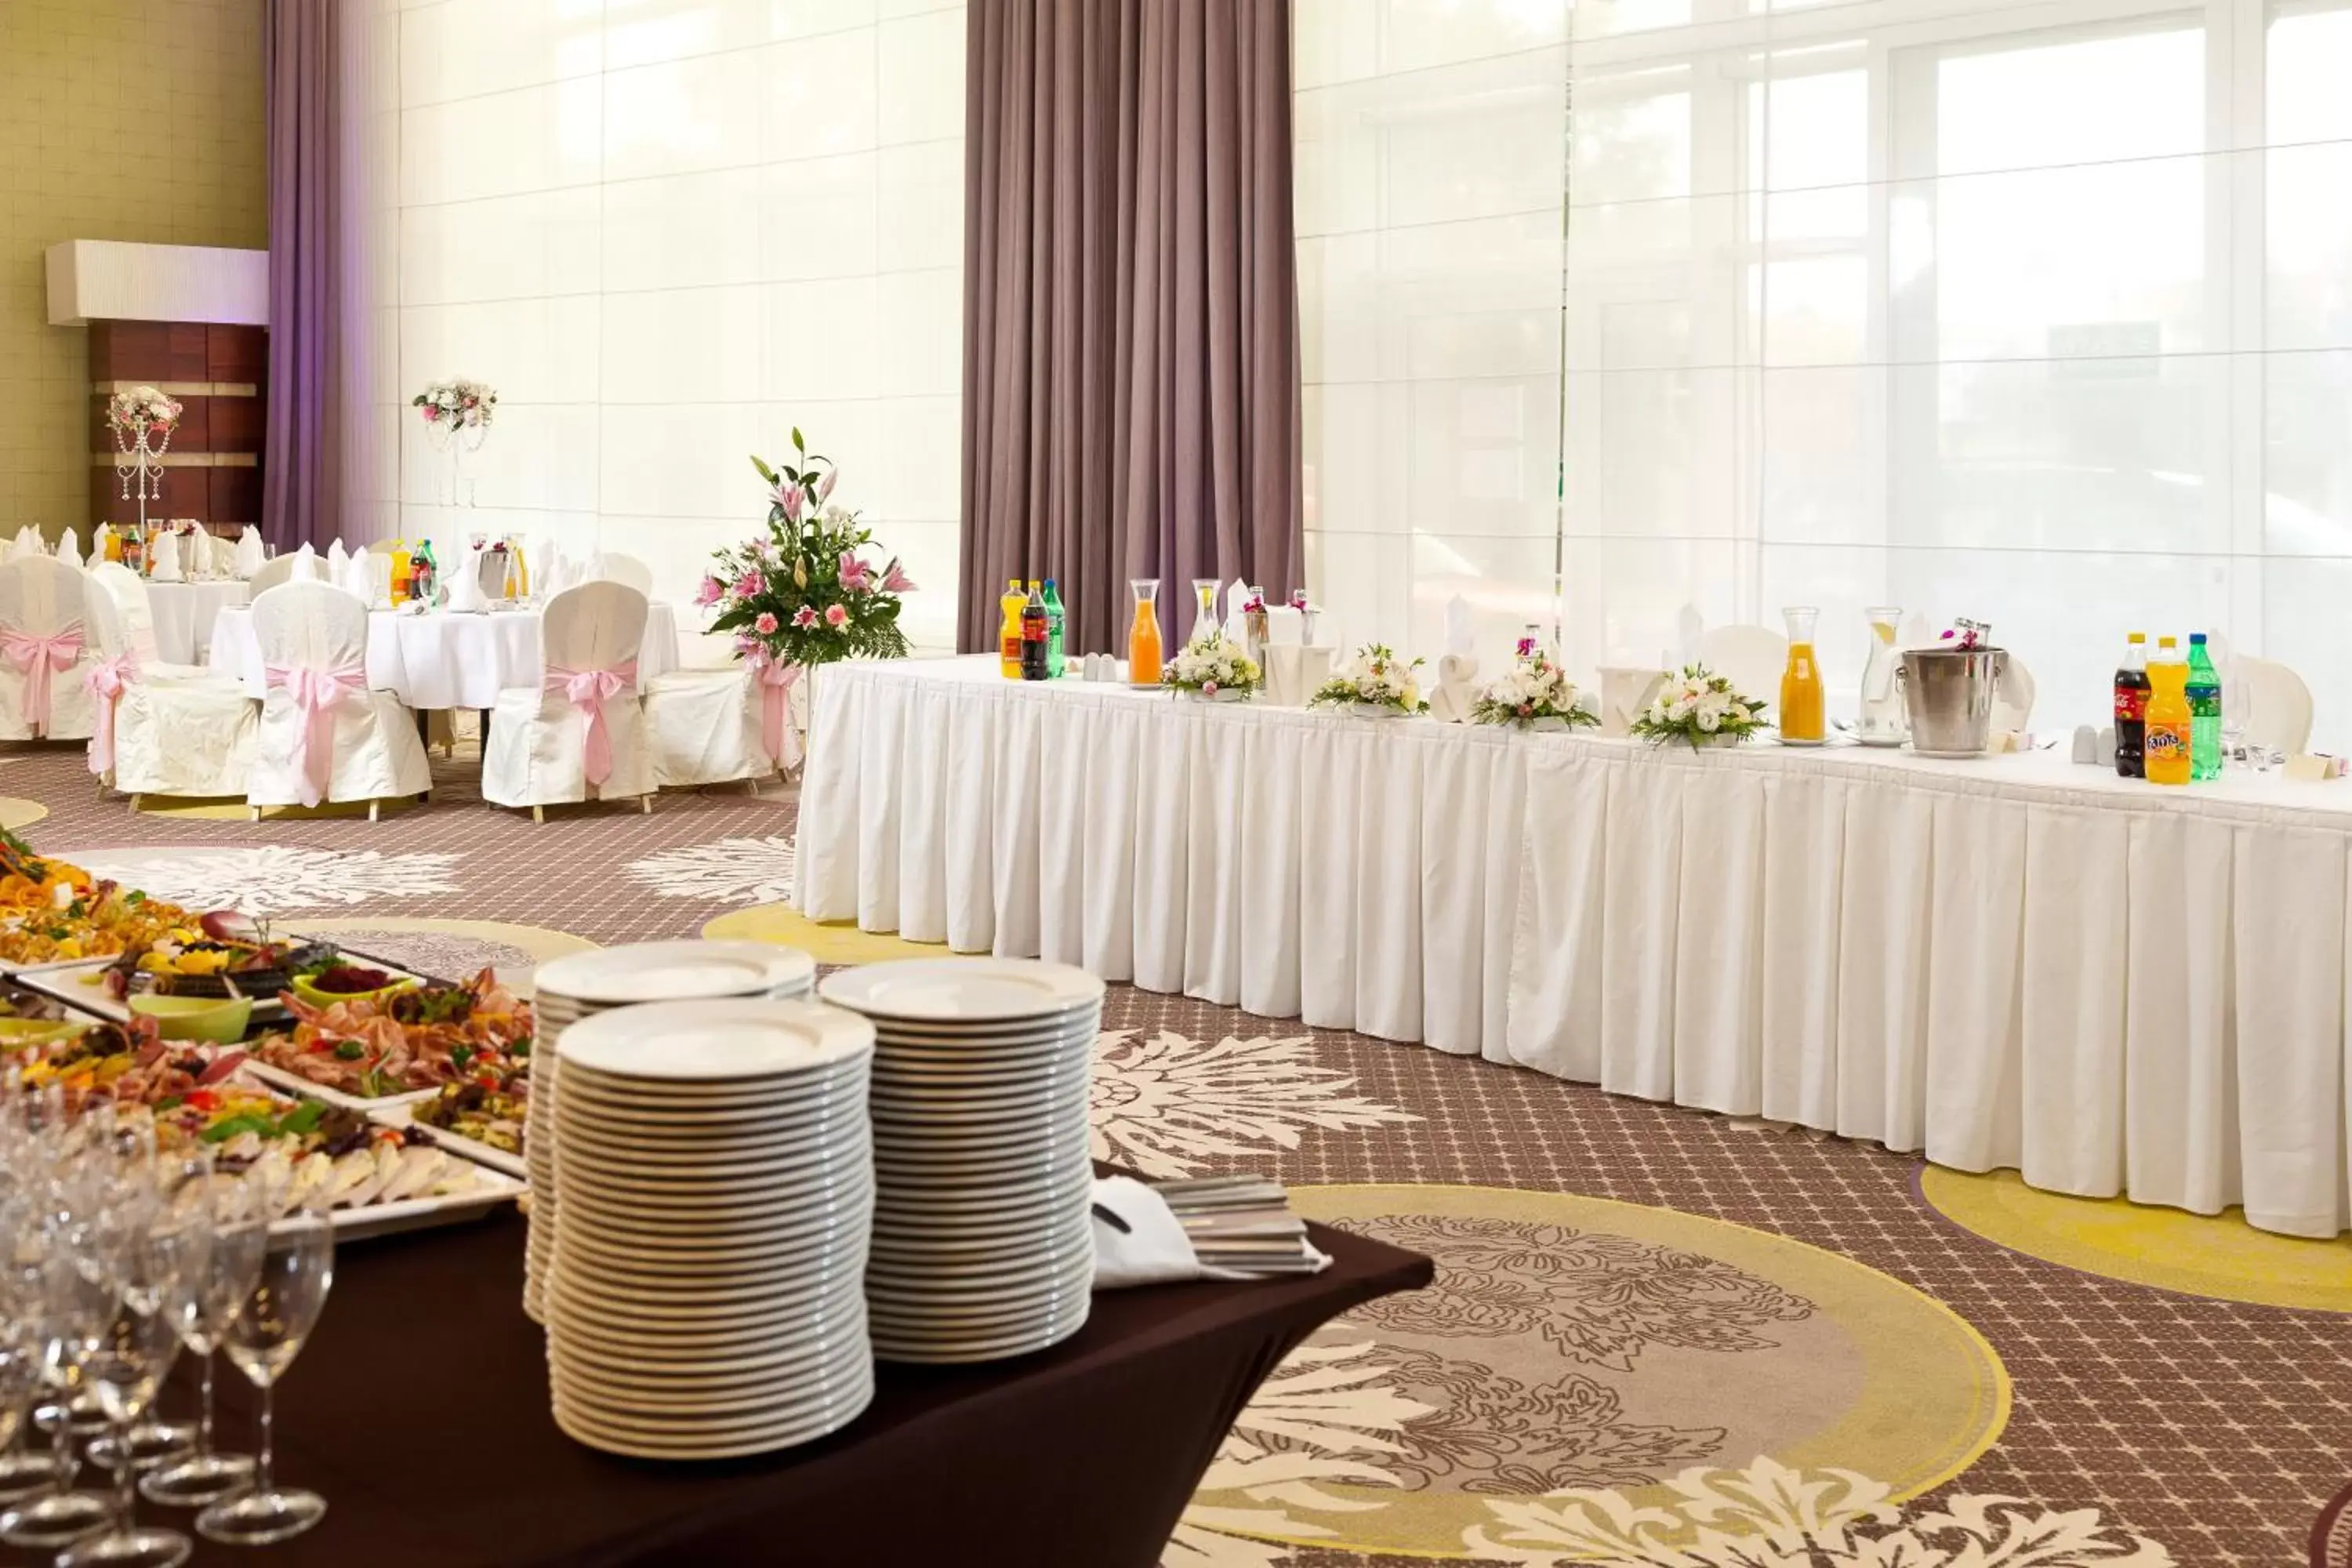 Banquet/Function facilities, Banquet Facilities in Warmiński Hotel & Conference